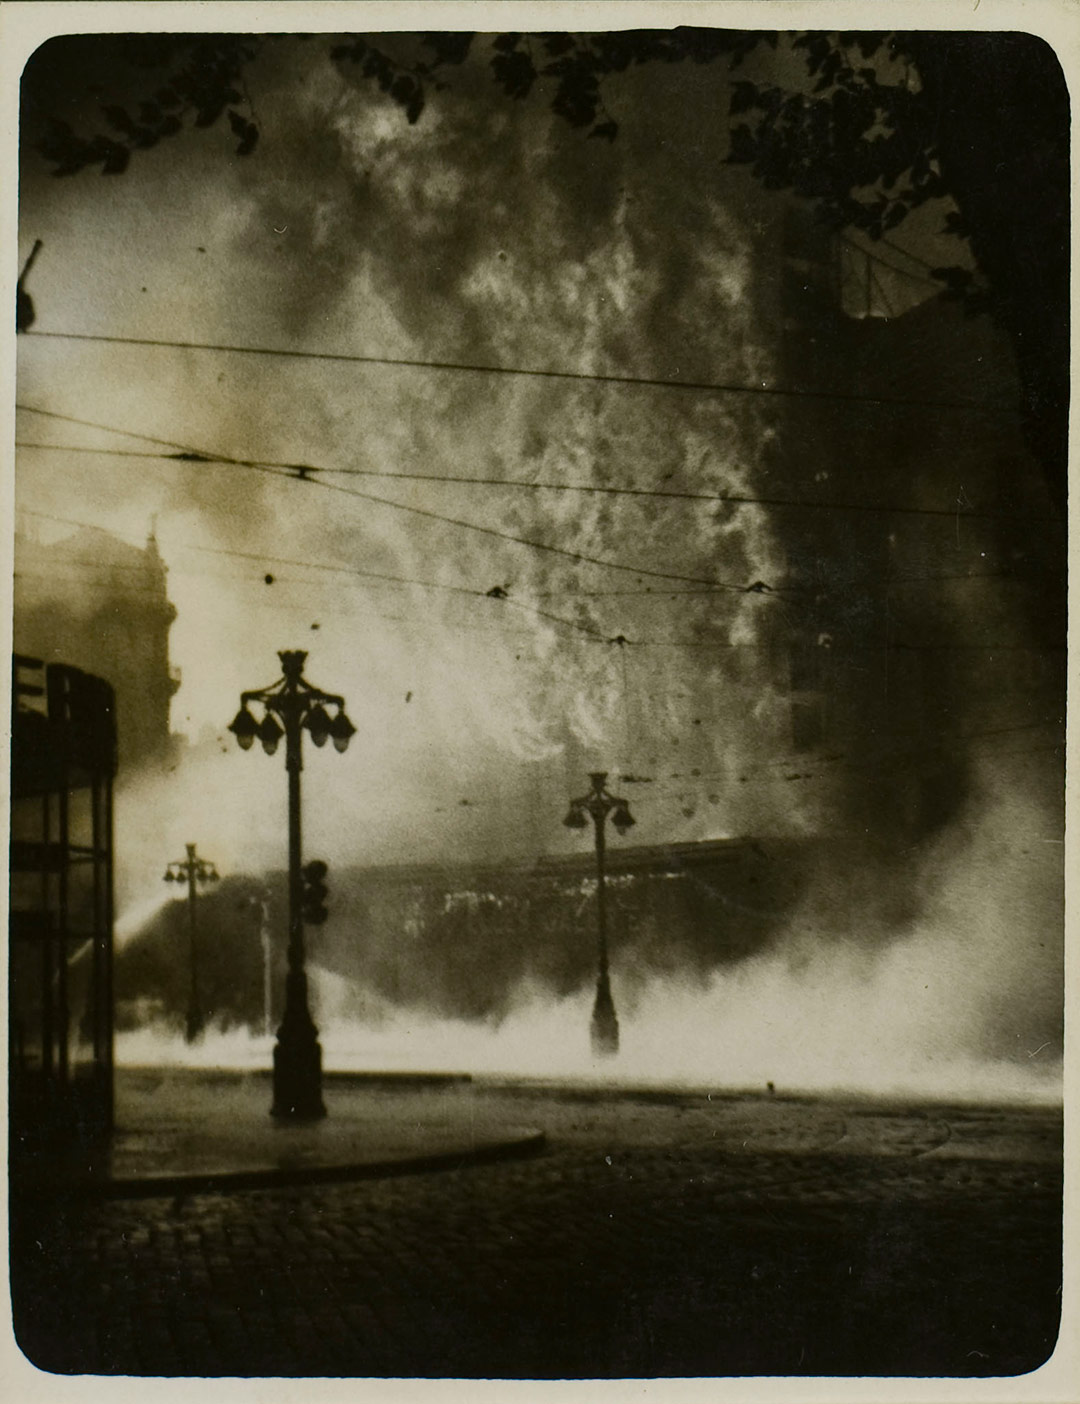 L'incendie des Nouvelles Galeries Carte postale - Anonyme - 1938 coll. Musée d'Histoire de Marseille